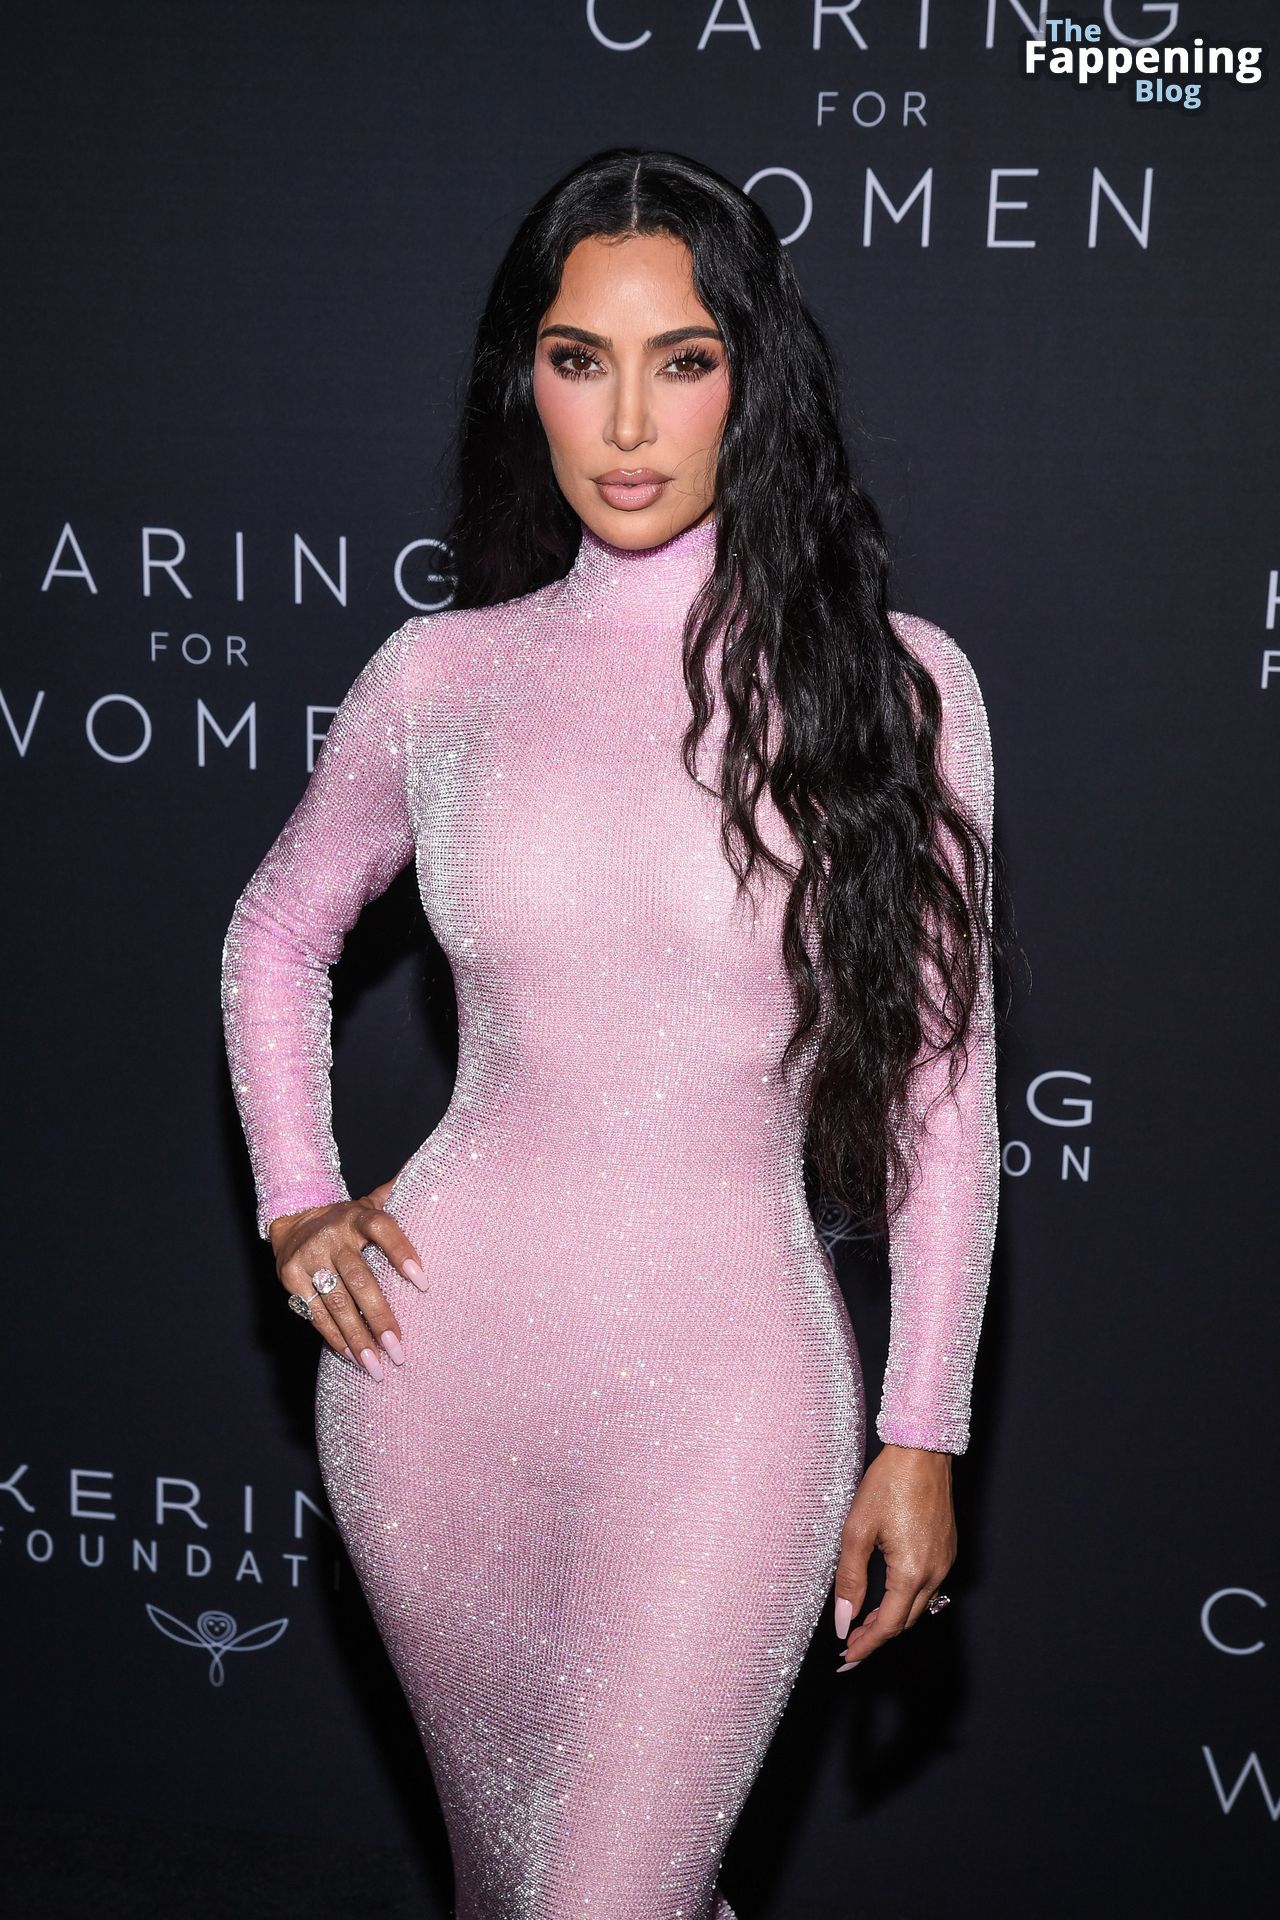 Kim-Kardashian-Sexy-90-The-Fappening-Blog.jpg